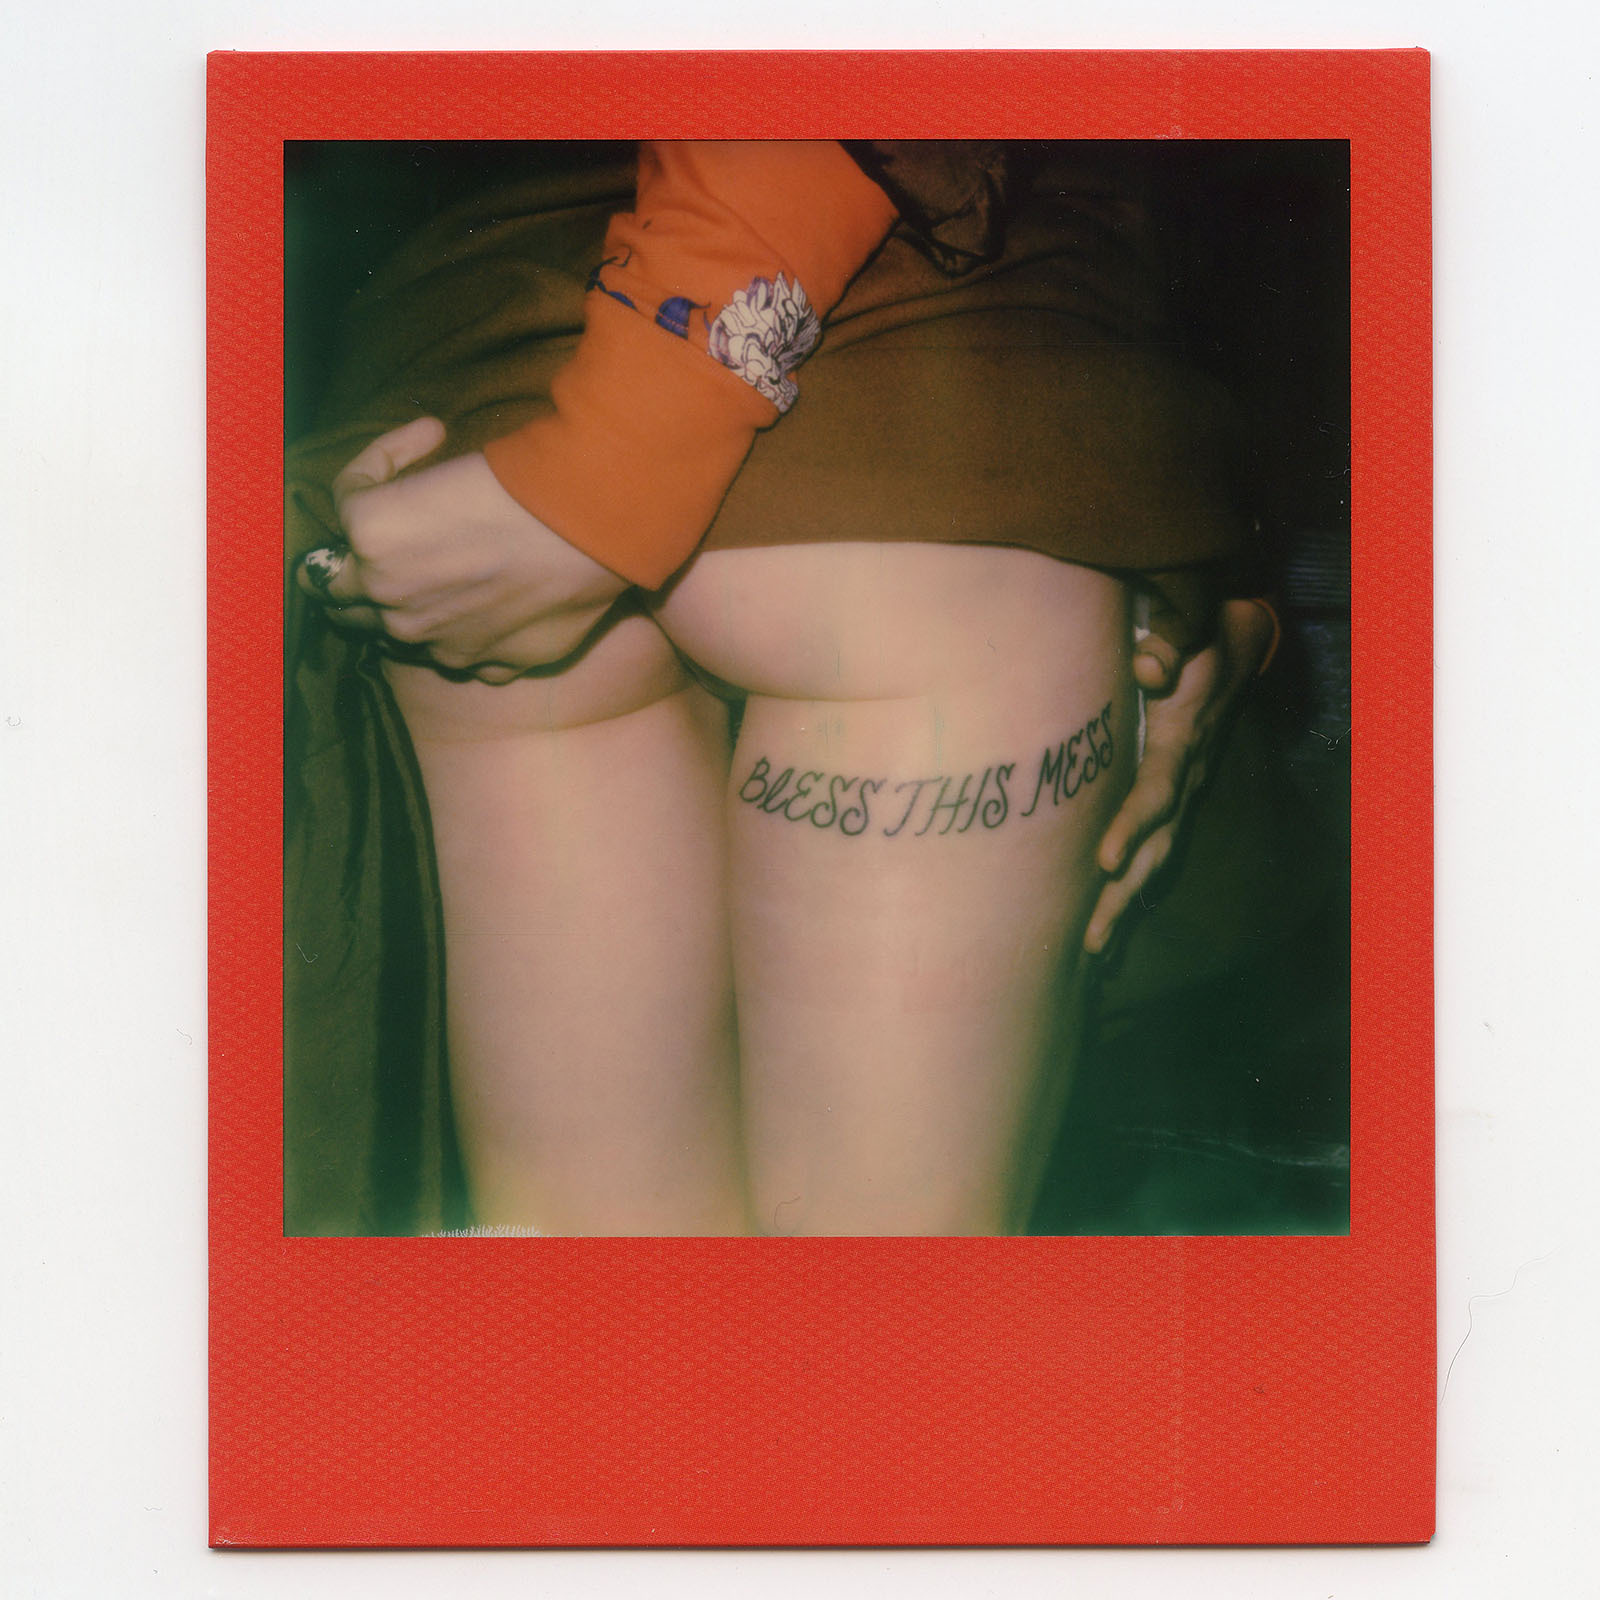 Polaroid of Joy Pearson's butt tattoo